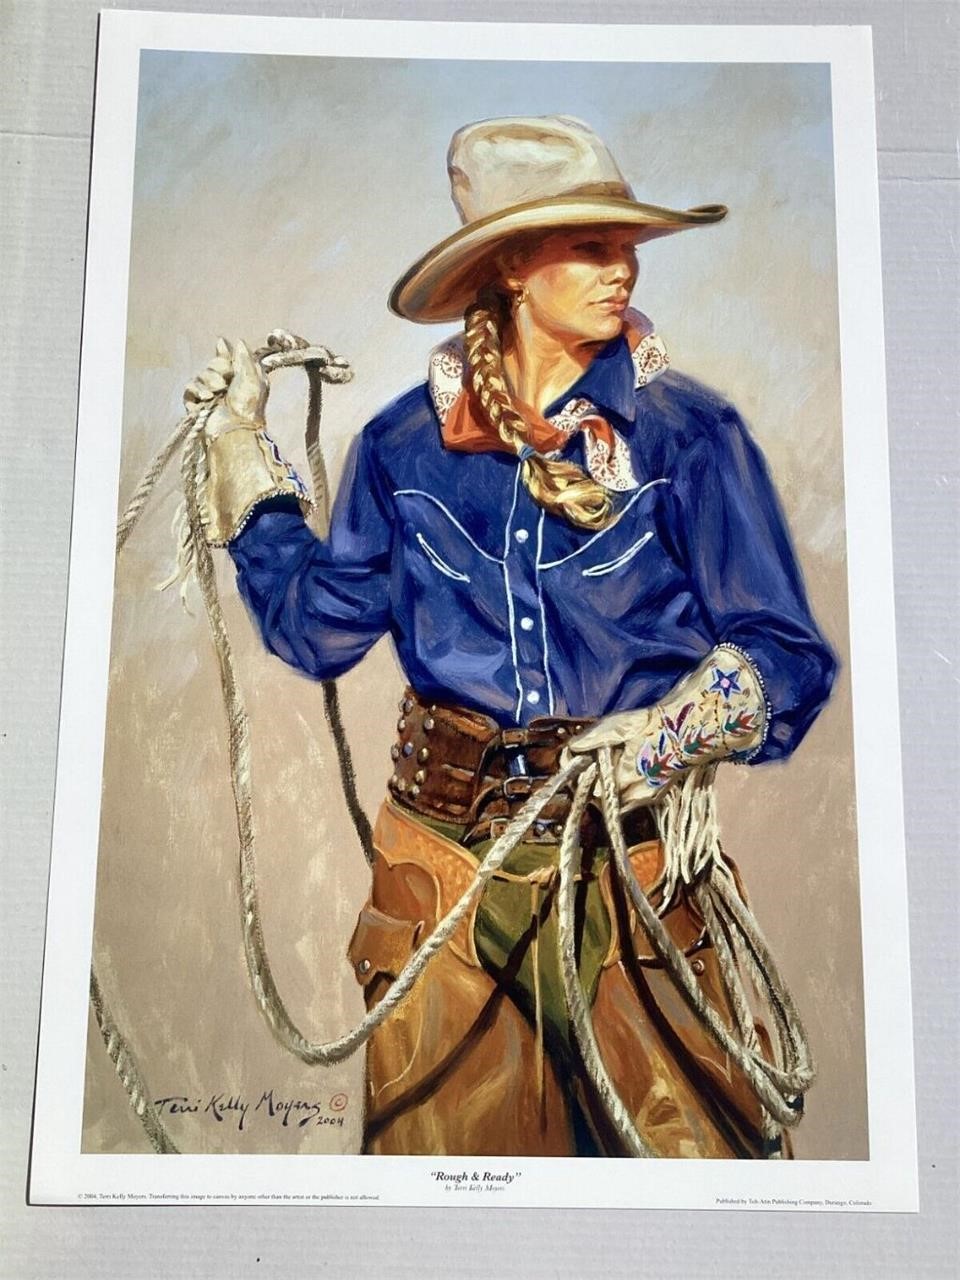 Art Gallery Closing Western Cowboy Theme